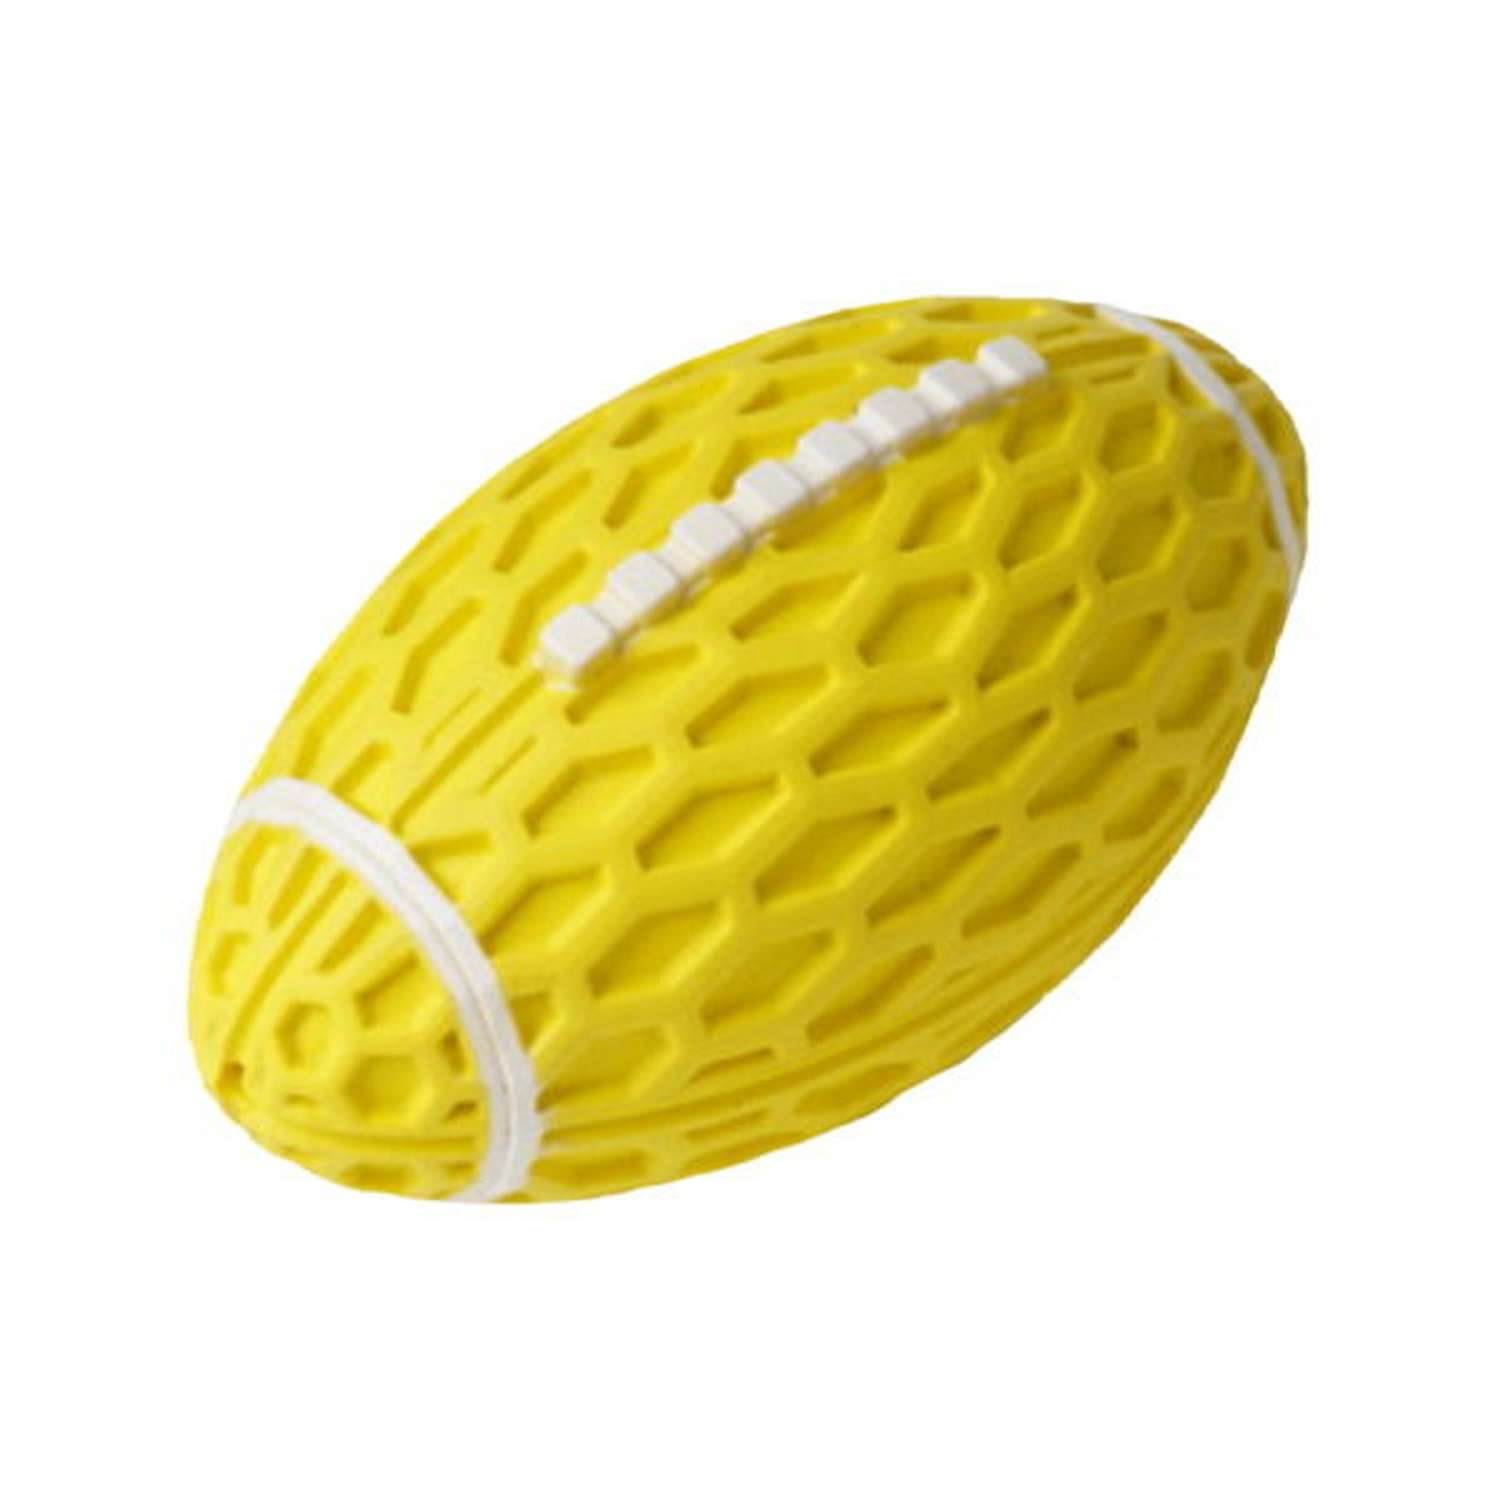 Игрушка для собак Homepet Silver series мяч регби с пищалкой Желтый 14.5см - фото 1